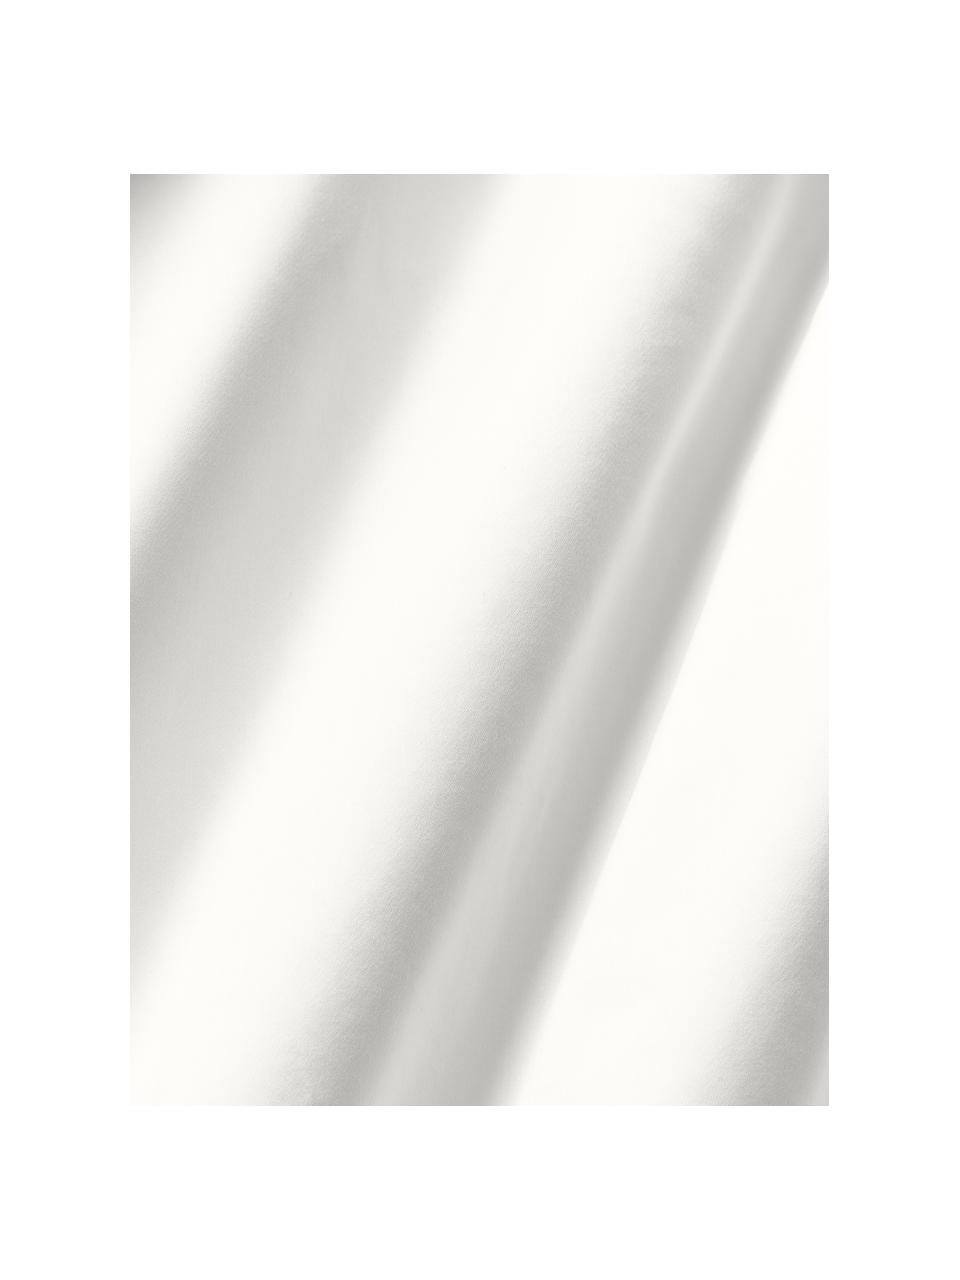 Sábana bajera de satén Premium, Gris claro, Cama 90 cm (90 x 200 x 25 cm)